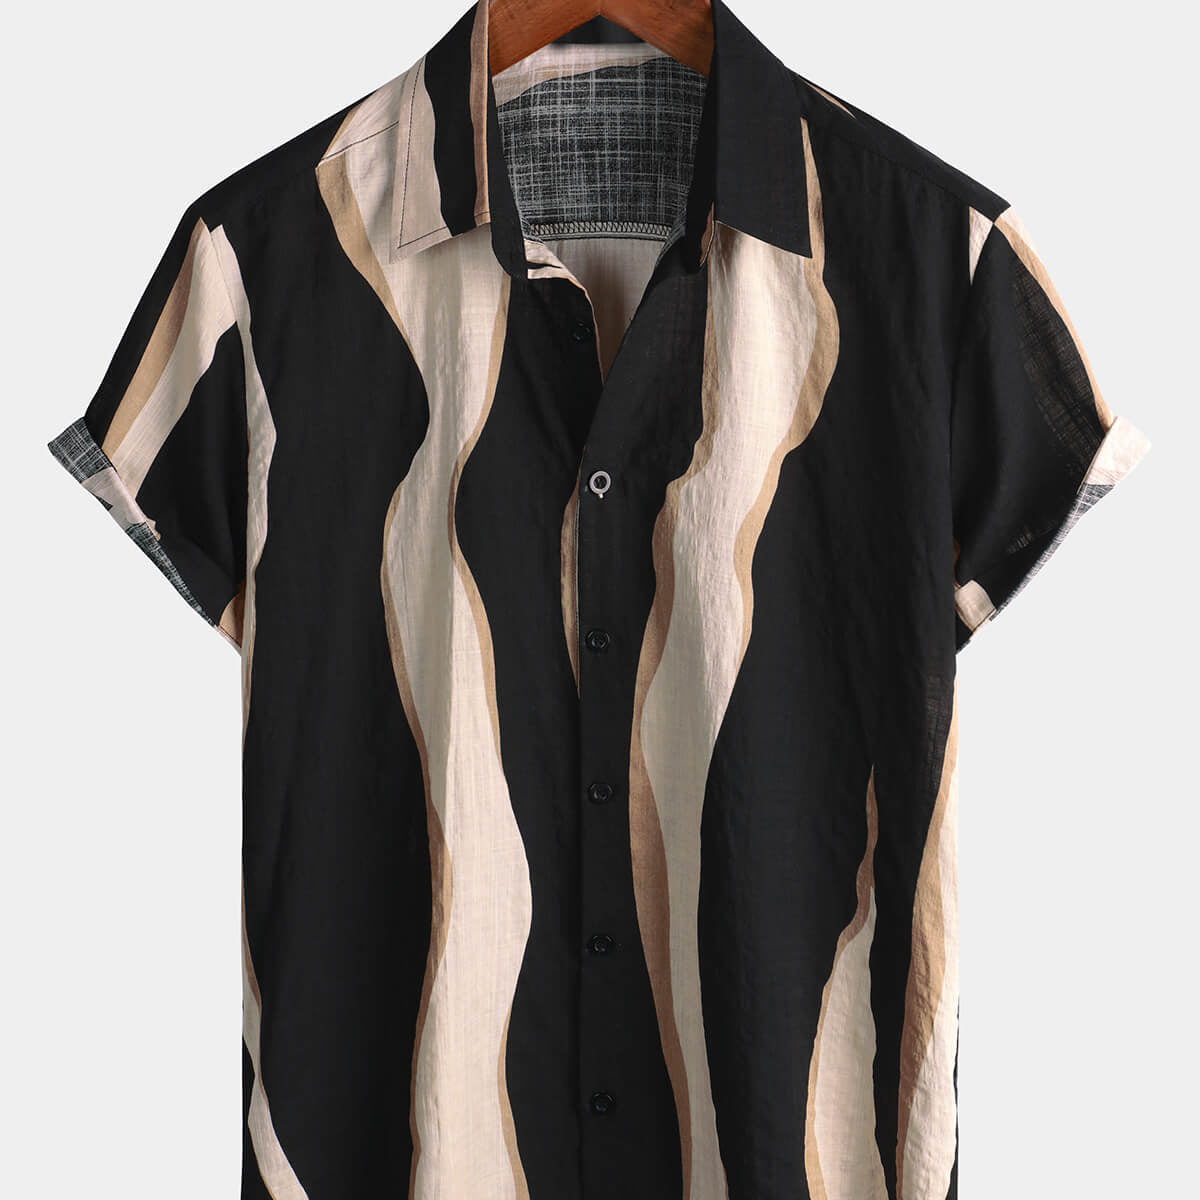 Camisa de manga corta con botones negros para vacaciones de verano a rayas informales retro para hombre